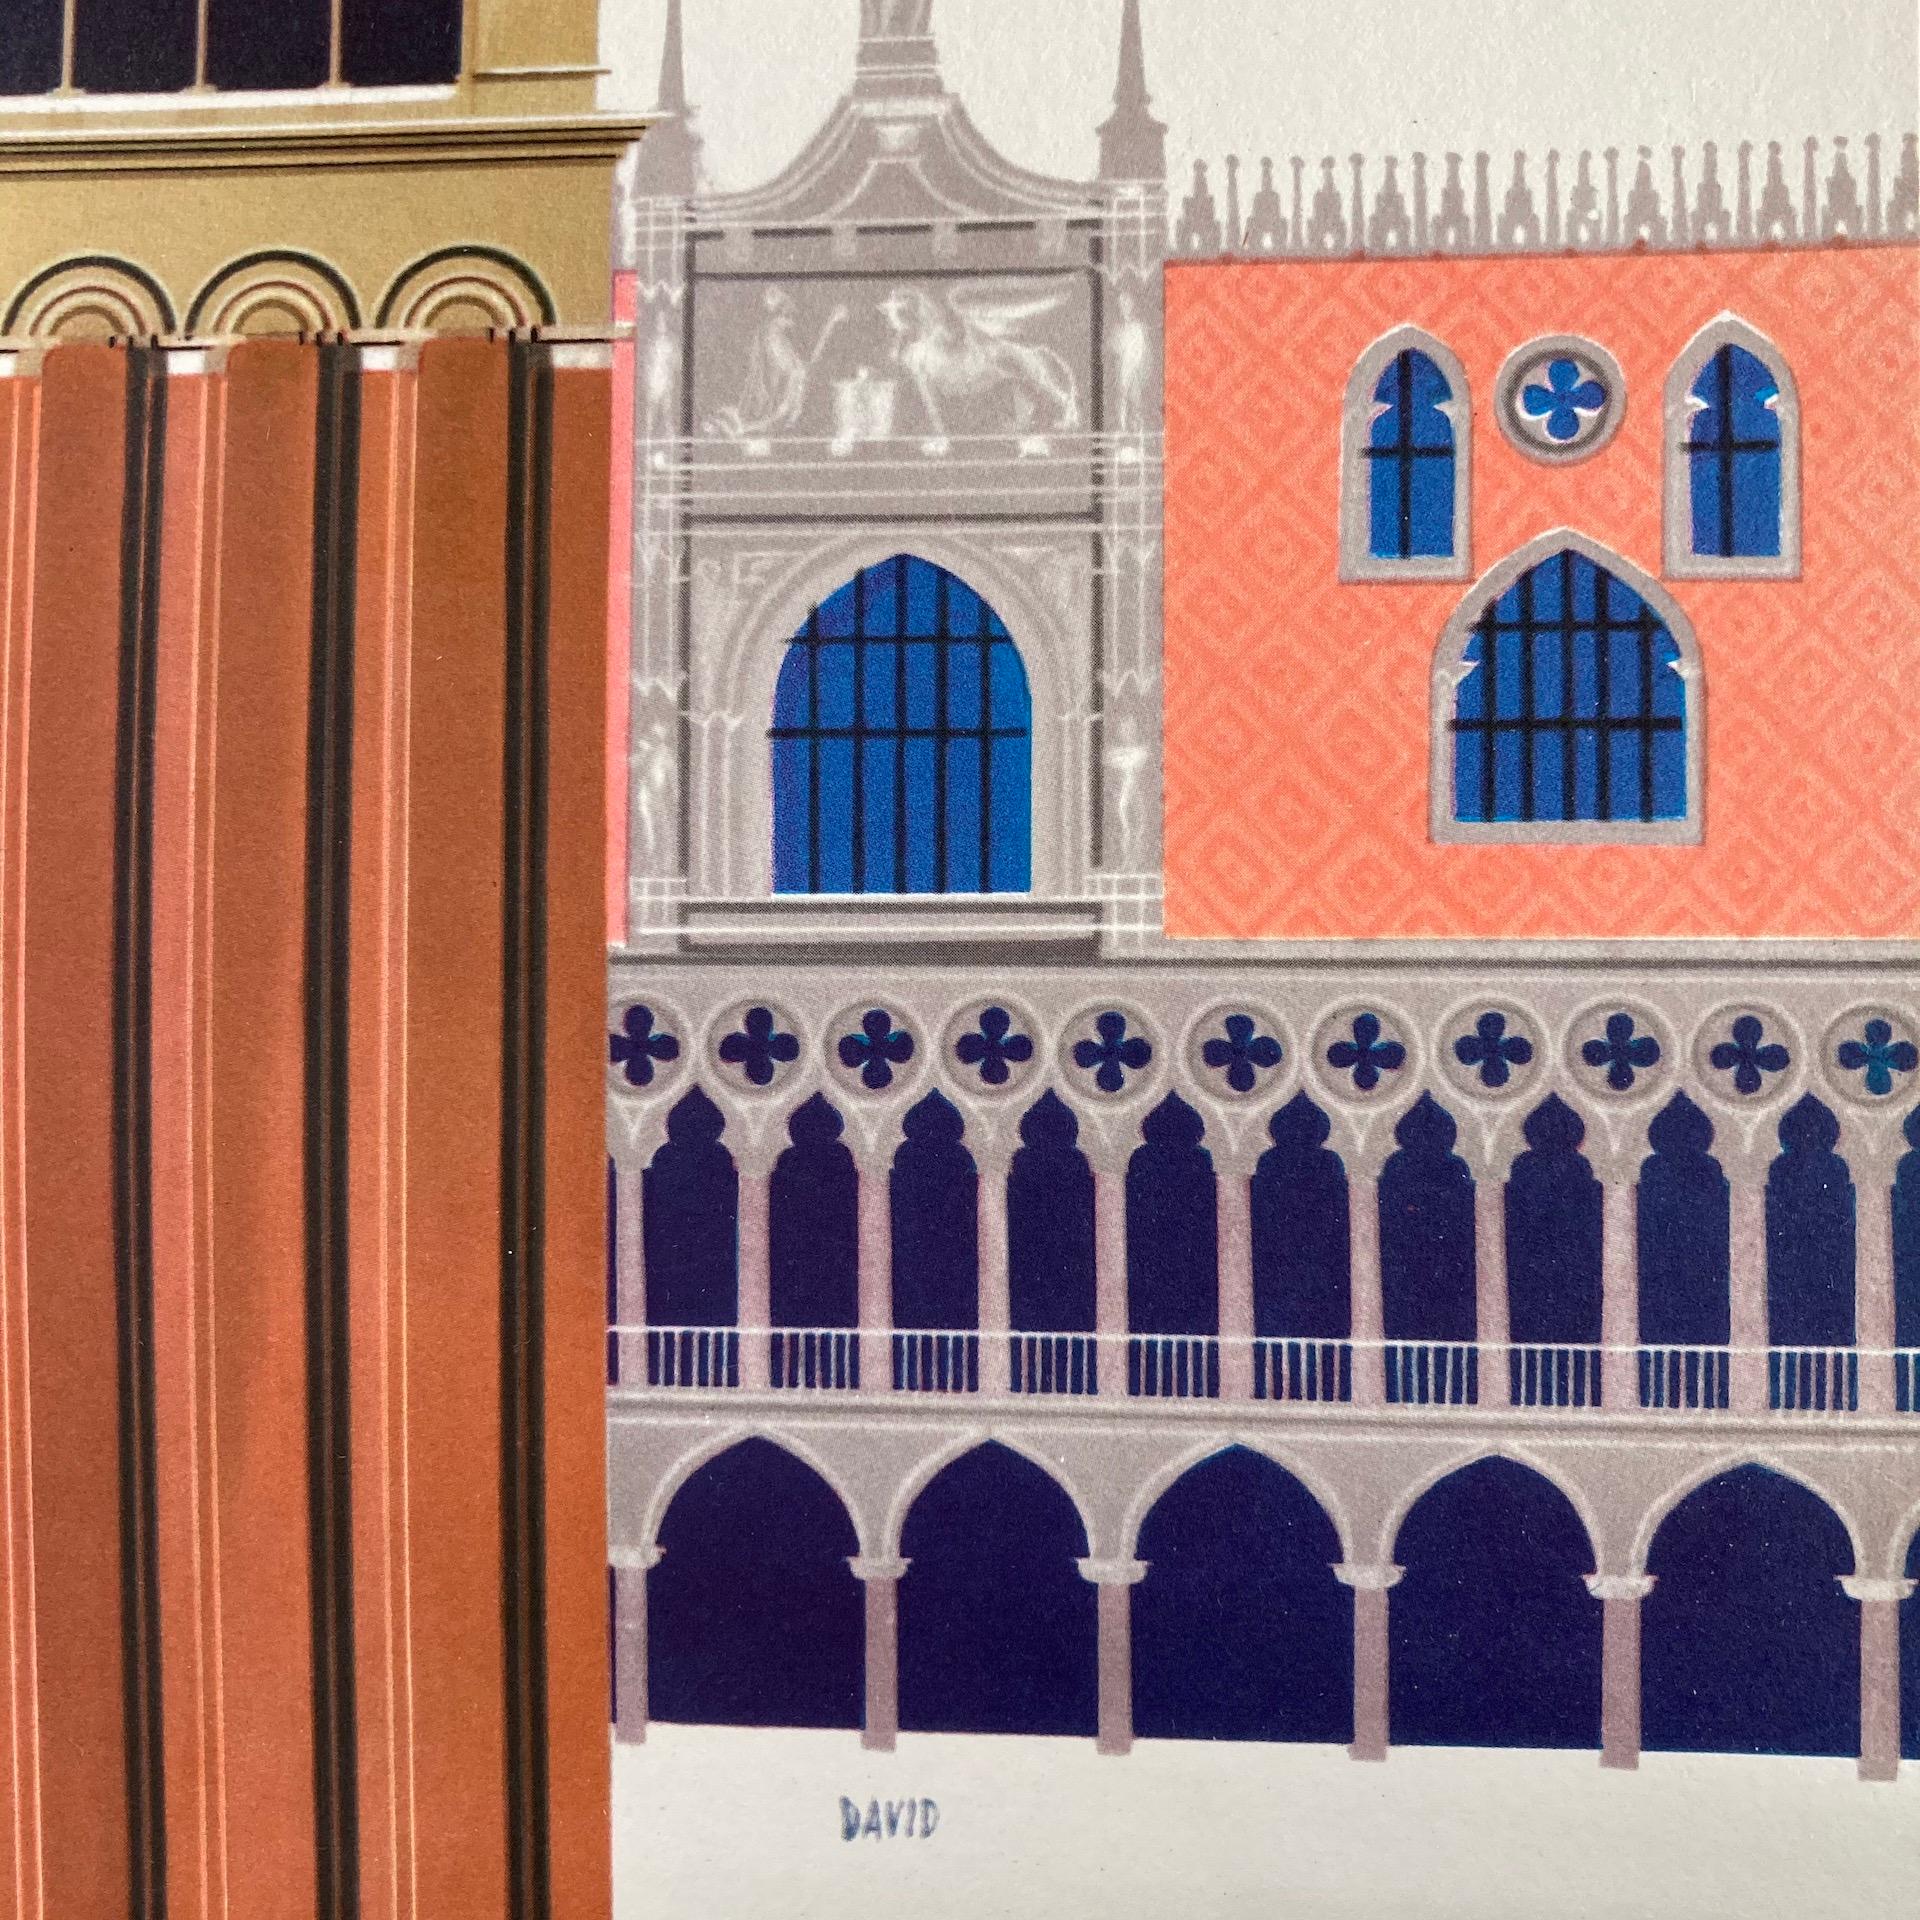 Affiche publicitaire originale de voyage - Fly TWA Italy - représentant une belle image de l'artiste américain David Klein (1918-2005) d'une vue de la place Saint-Marc à Venise avec des oiseaux volant autour de la tour historique de San Marco, un